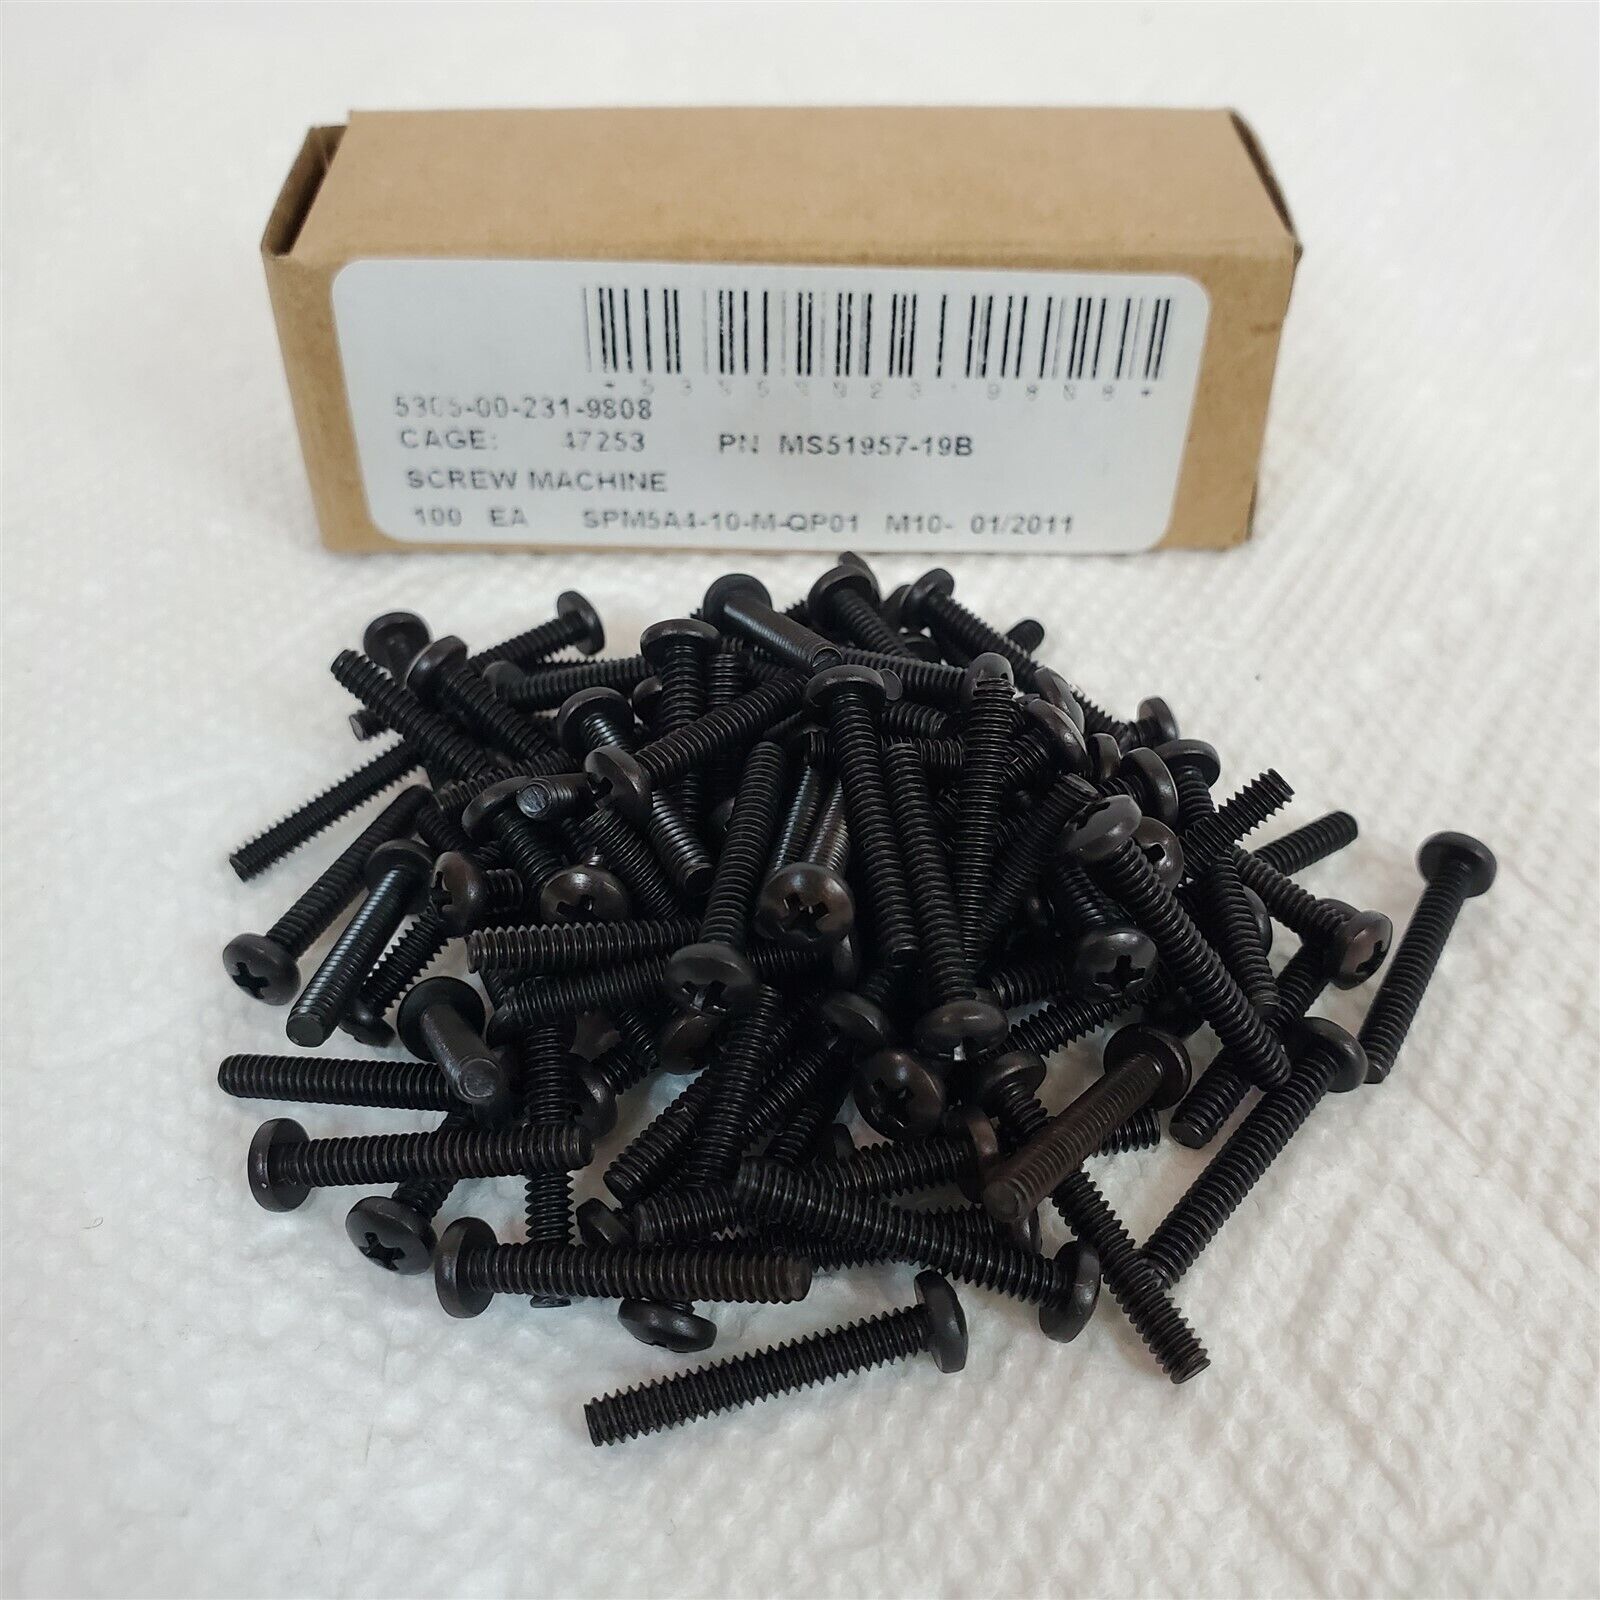 Phillips Pan Head Black Oxide Stainless Steel Machine Screws 100 Pack 4-40 x 3/4